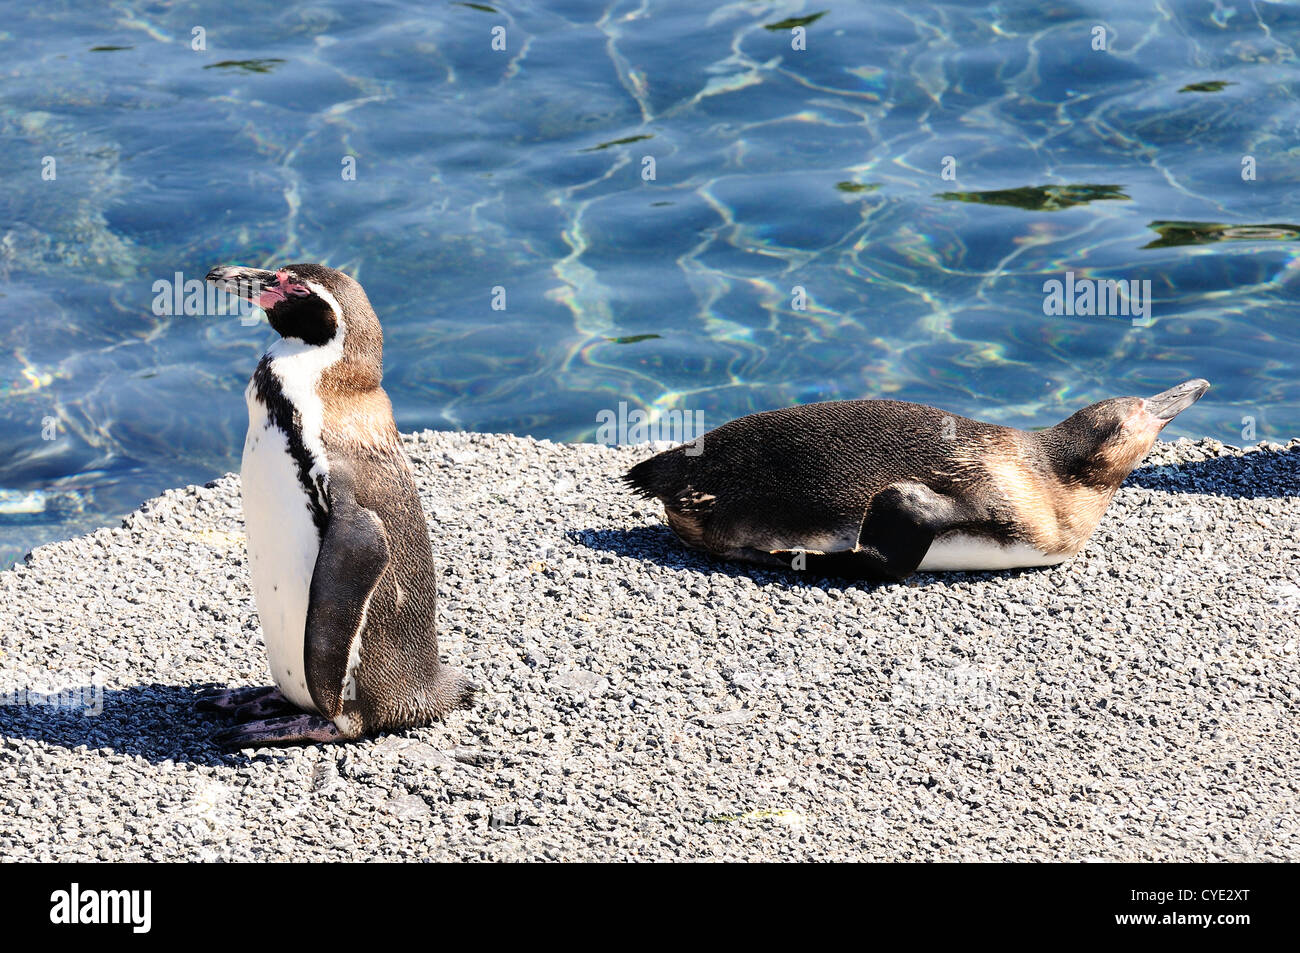 Due pinguini dreaming seduto su una roccia, freddo wqater in background Foto Stock